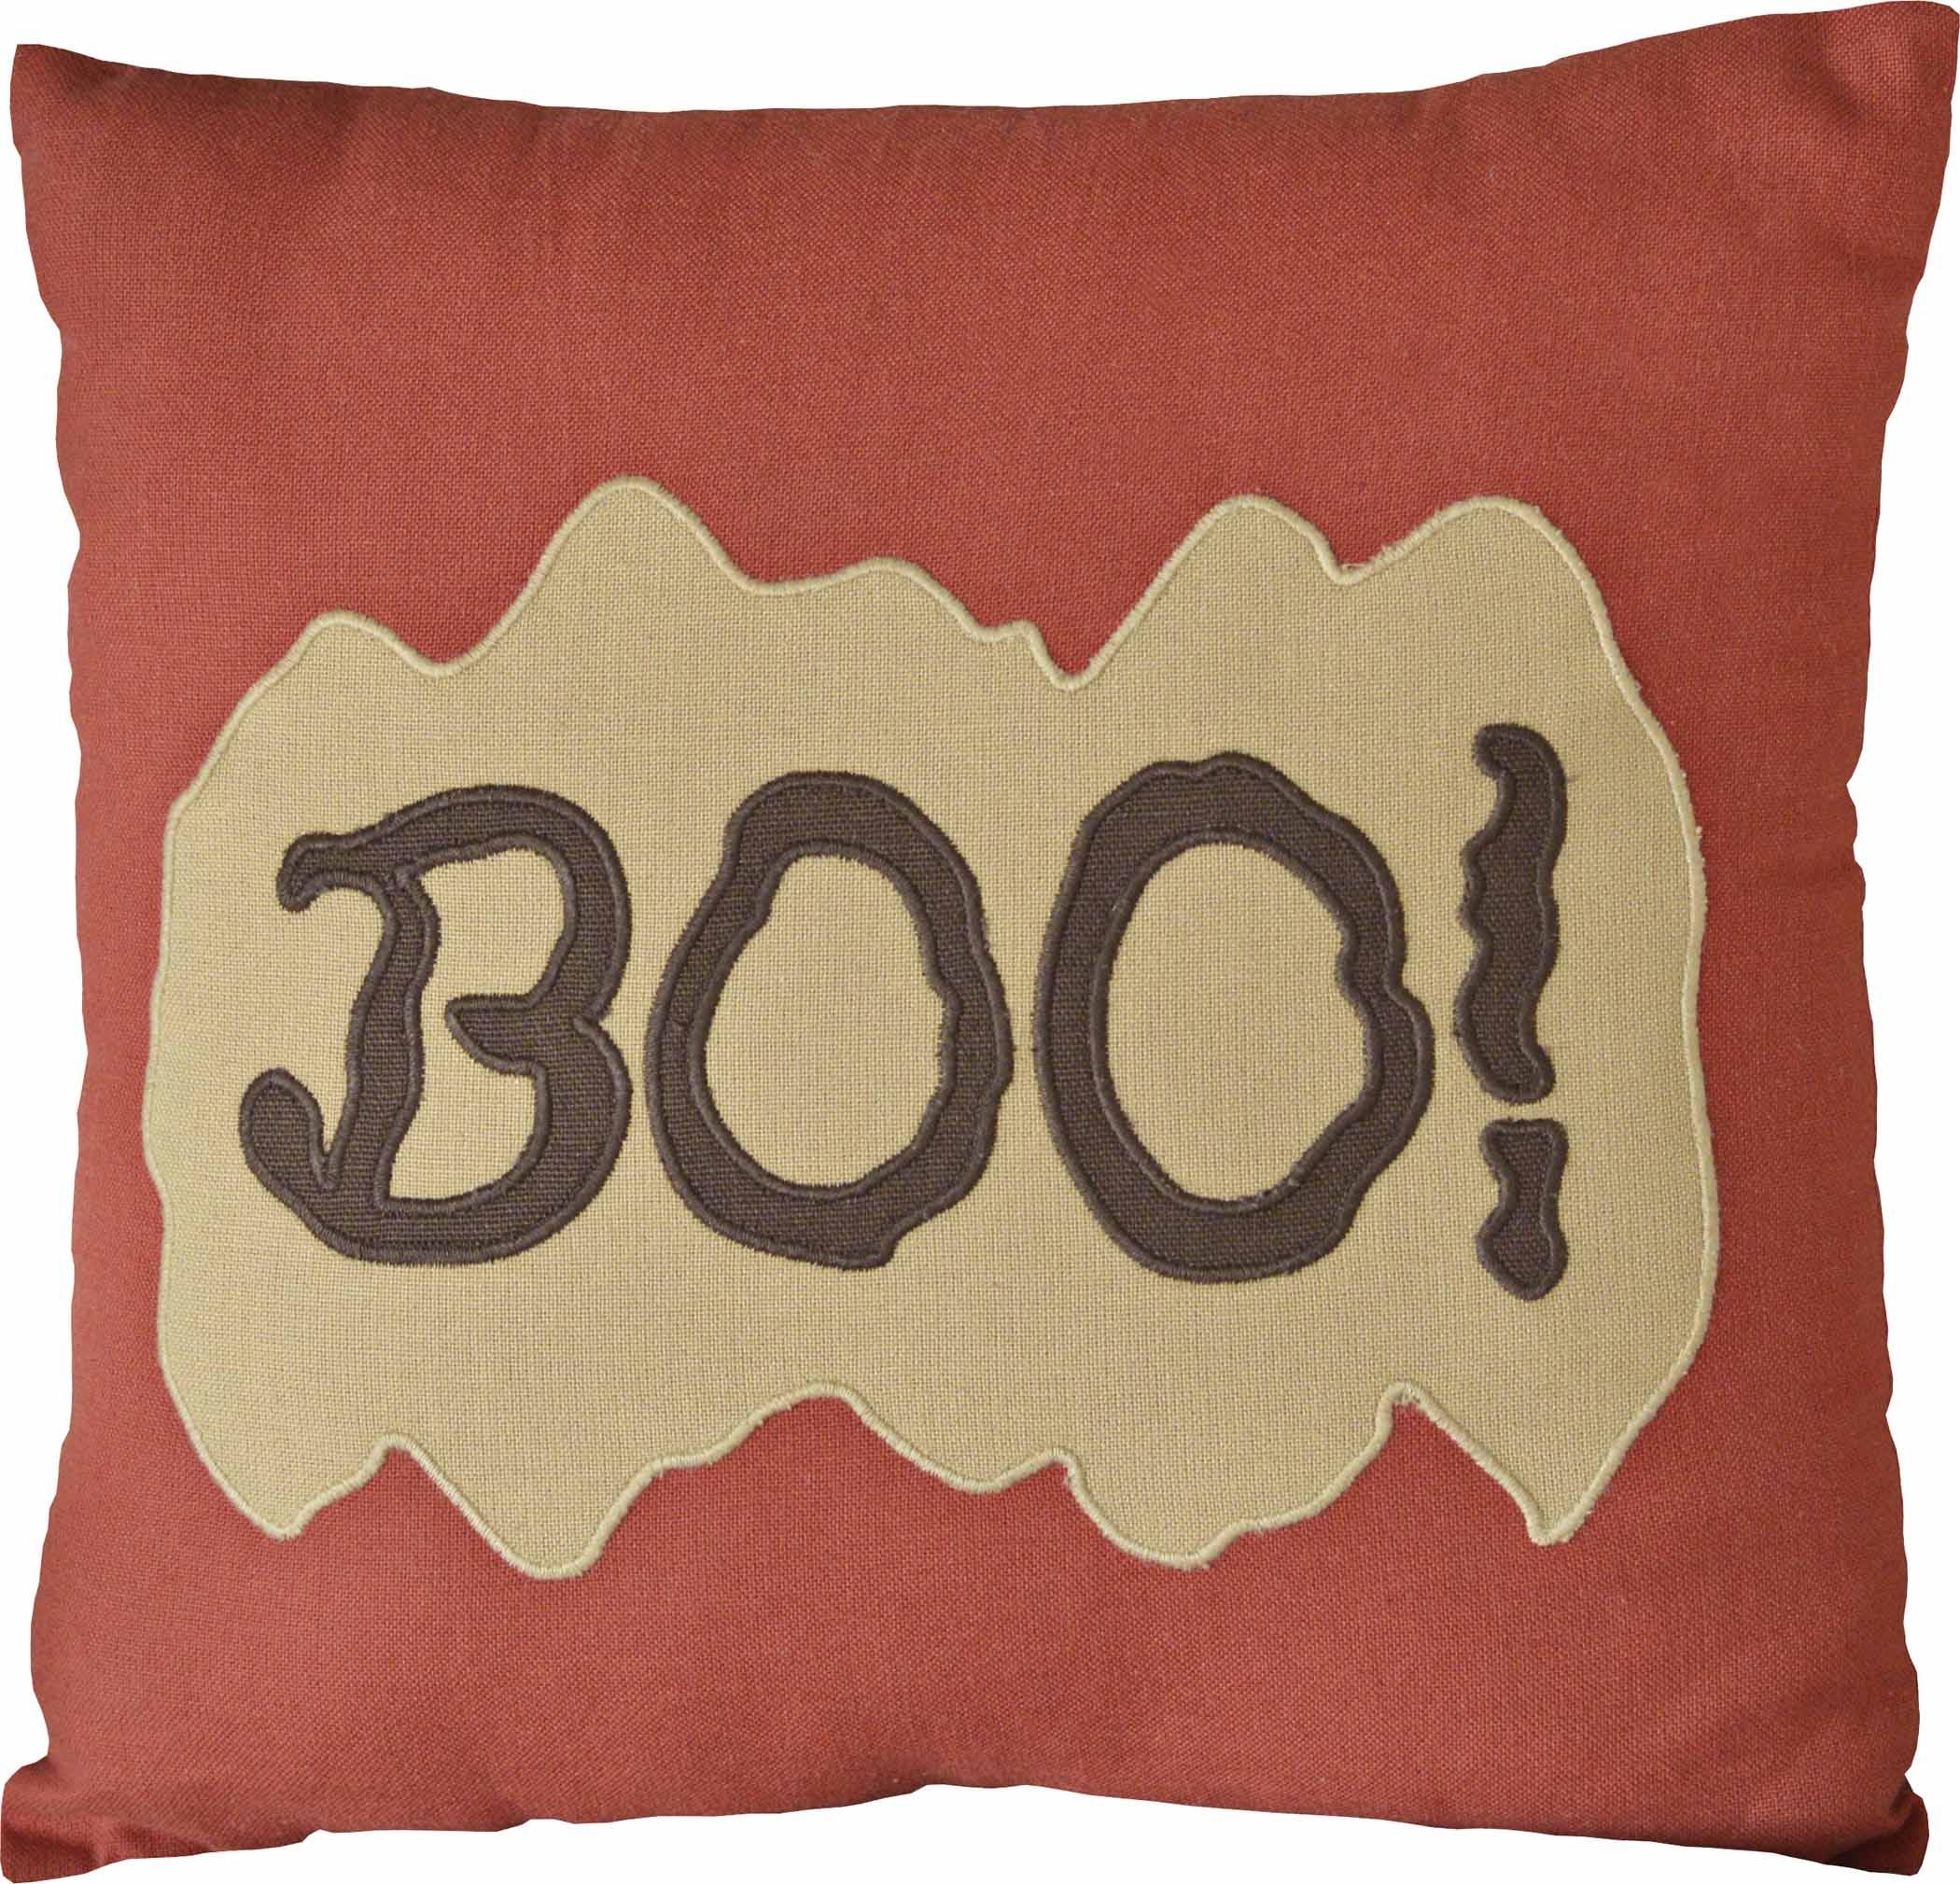 Boo Pillow 12x12 - The Fox Decor